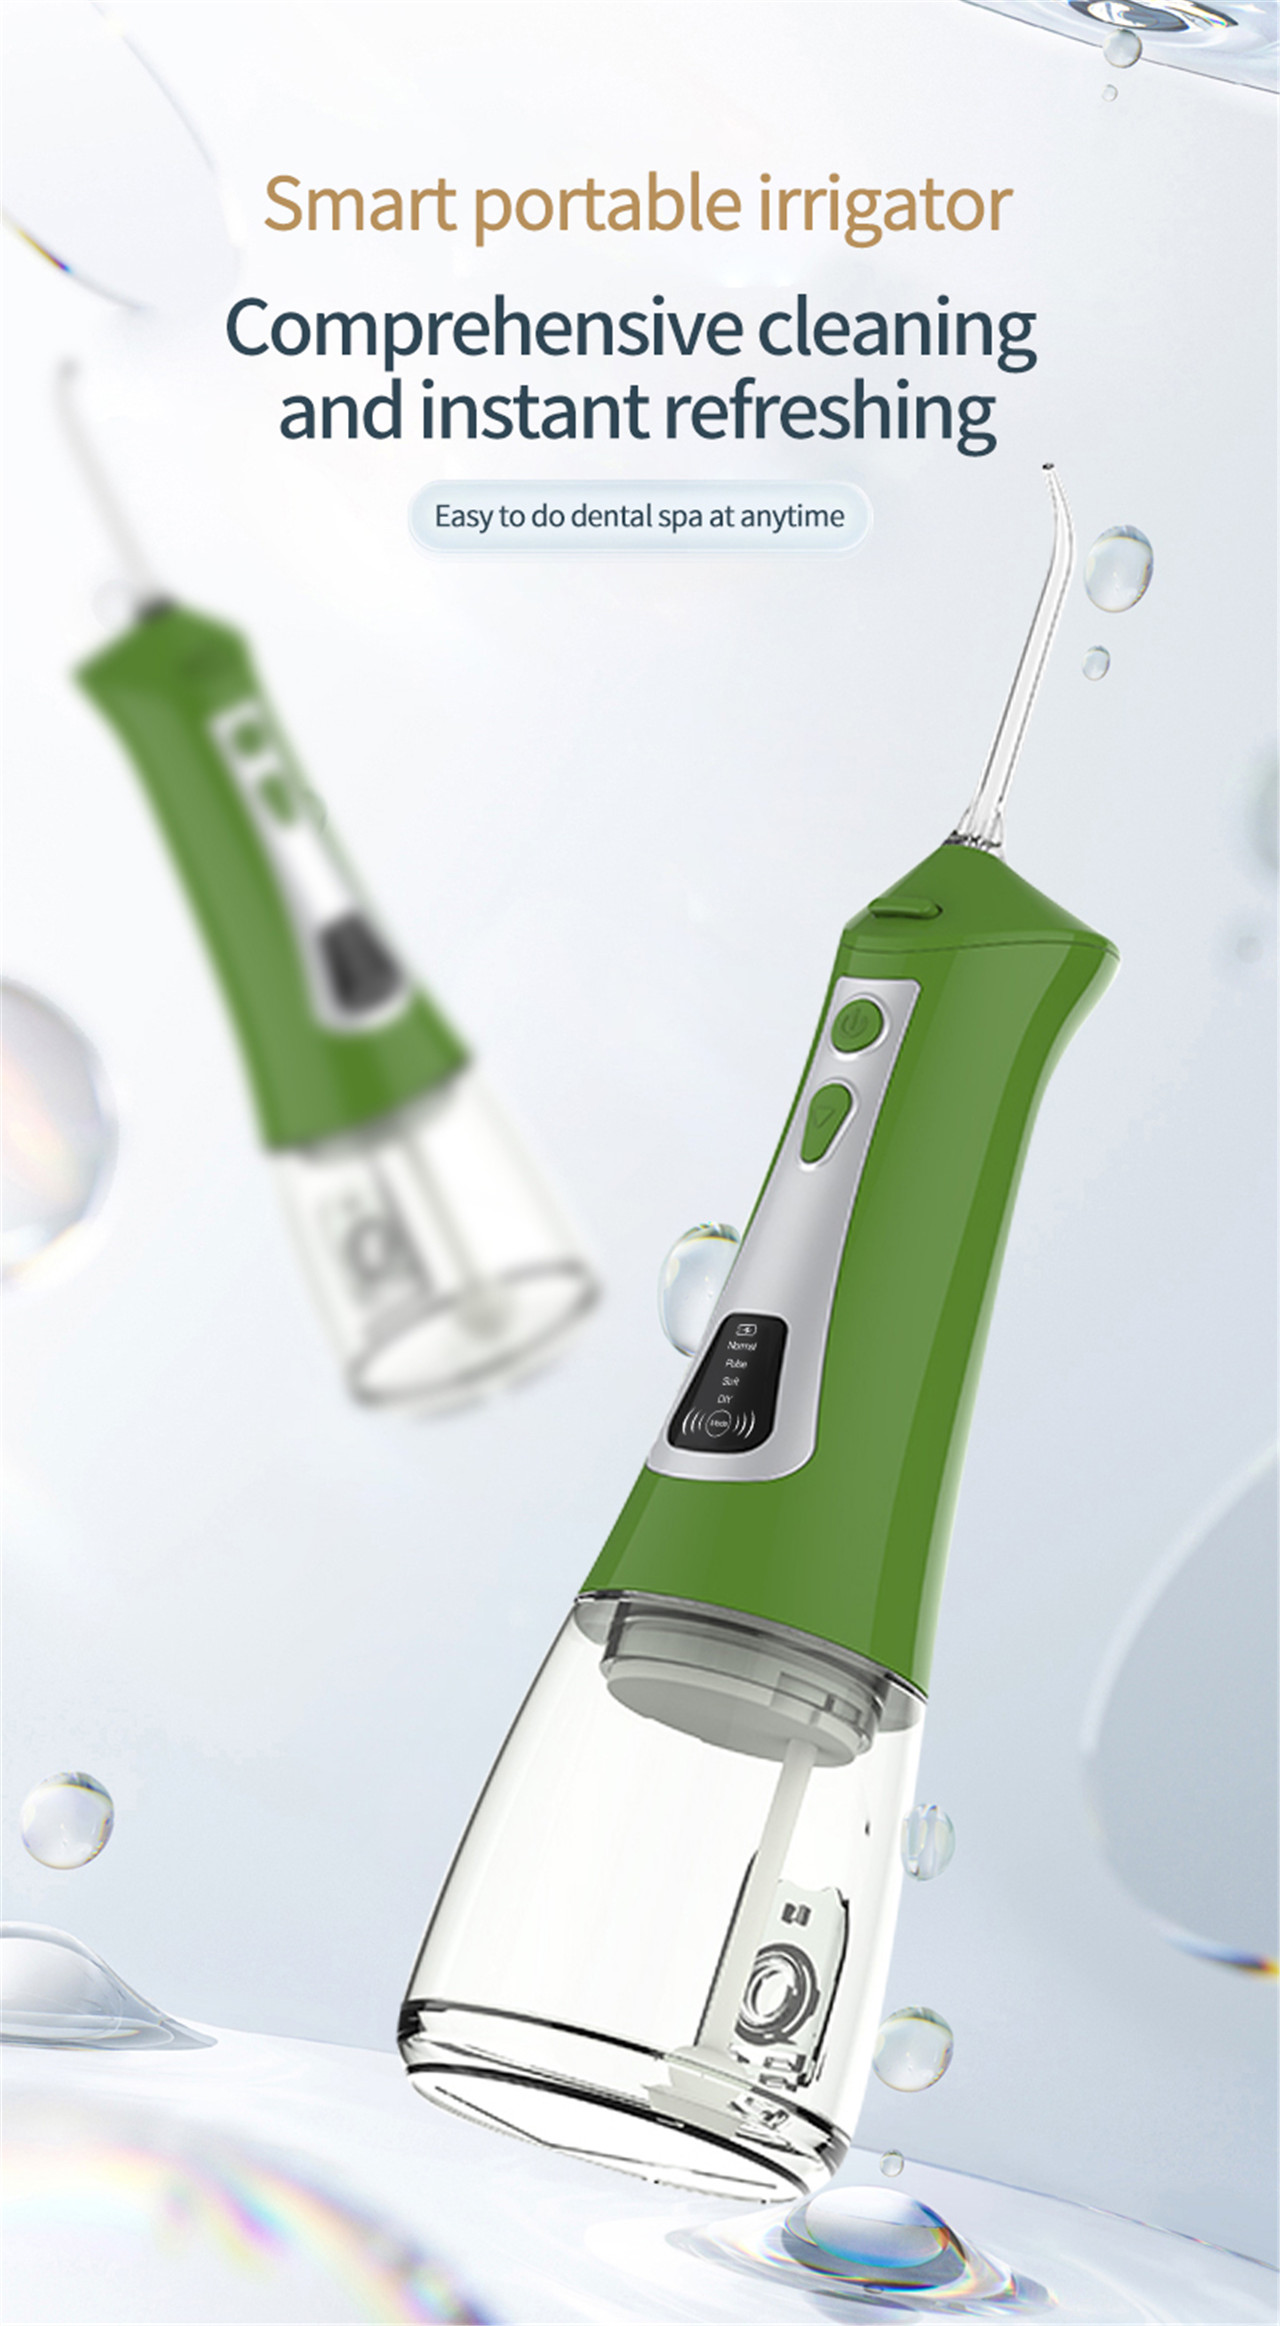 Selector de auga para irrigador oral con pantalla OLED para branqueamento de dentes (1)